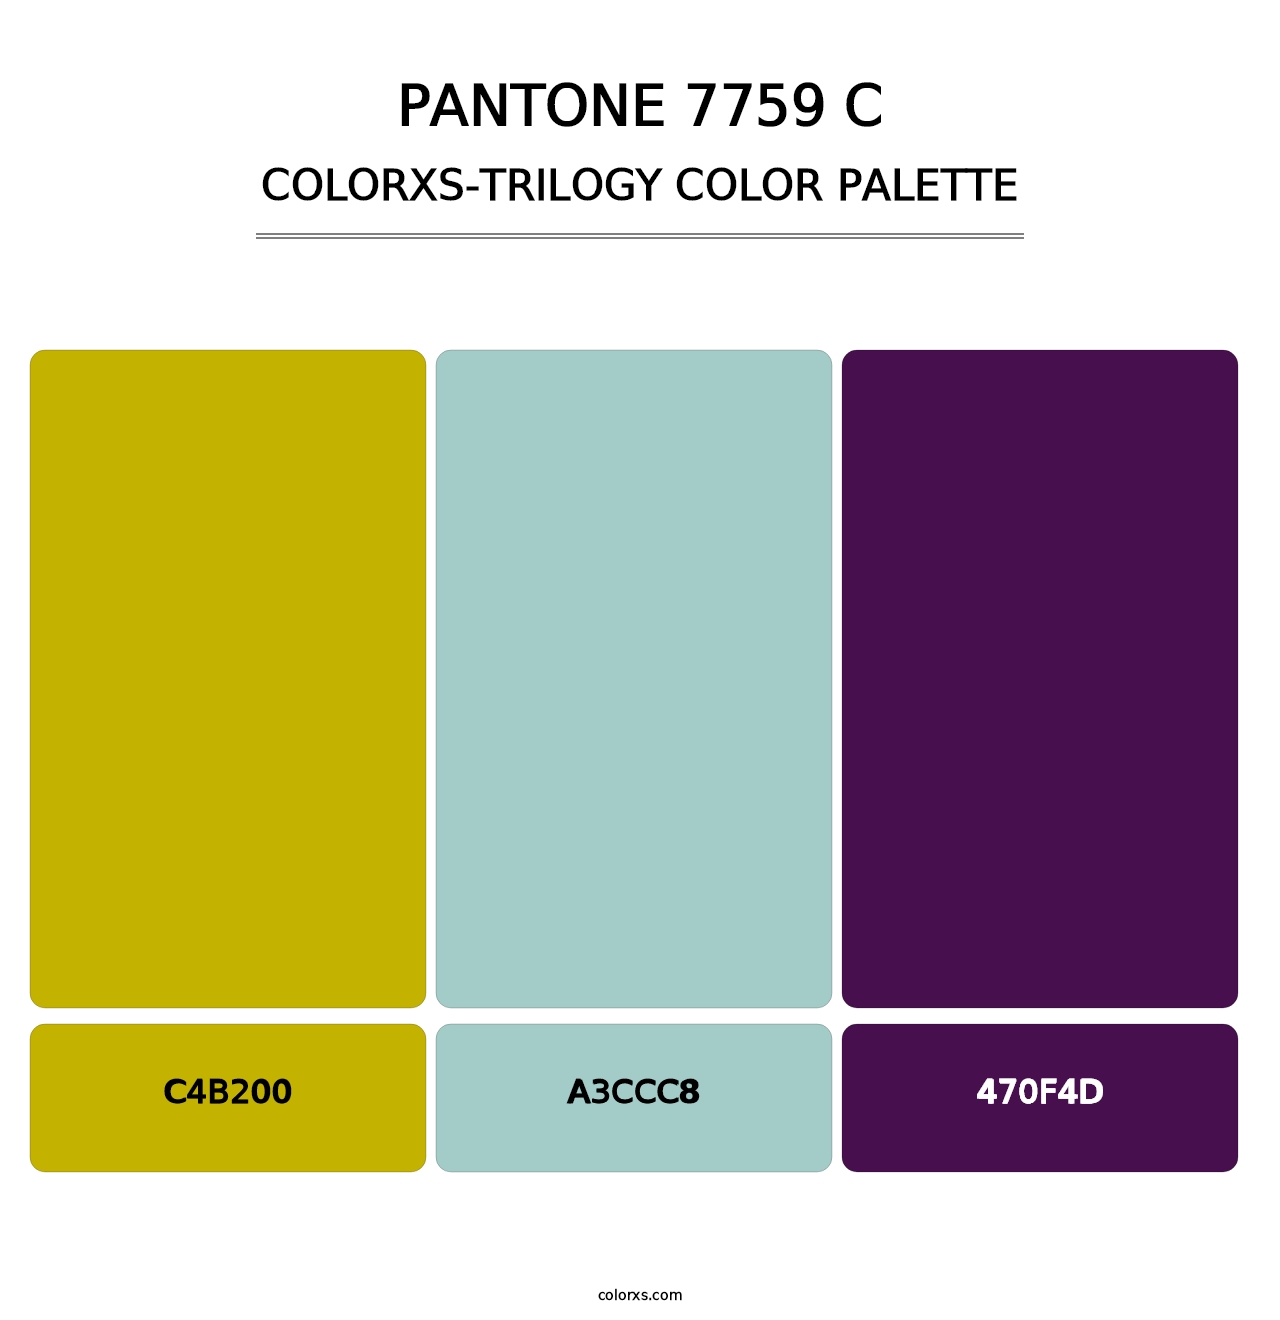 PANTONE 7759 C - Colorxs Trilogy Palette